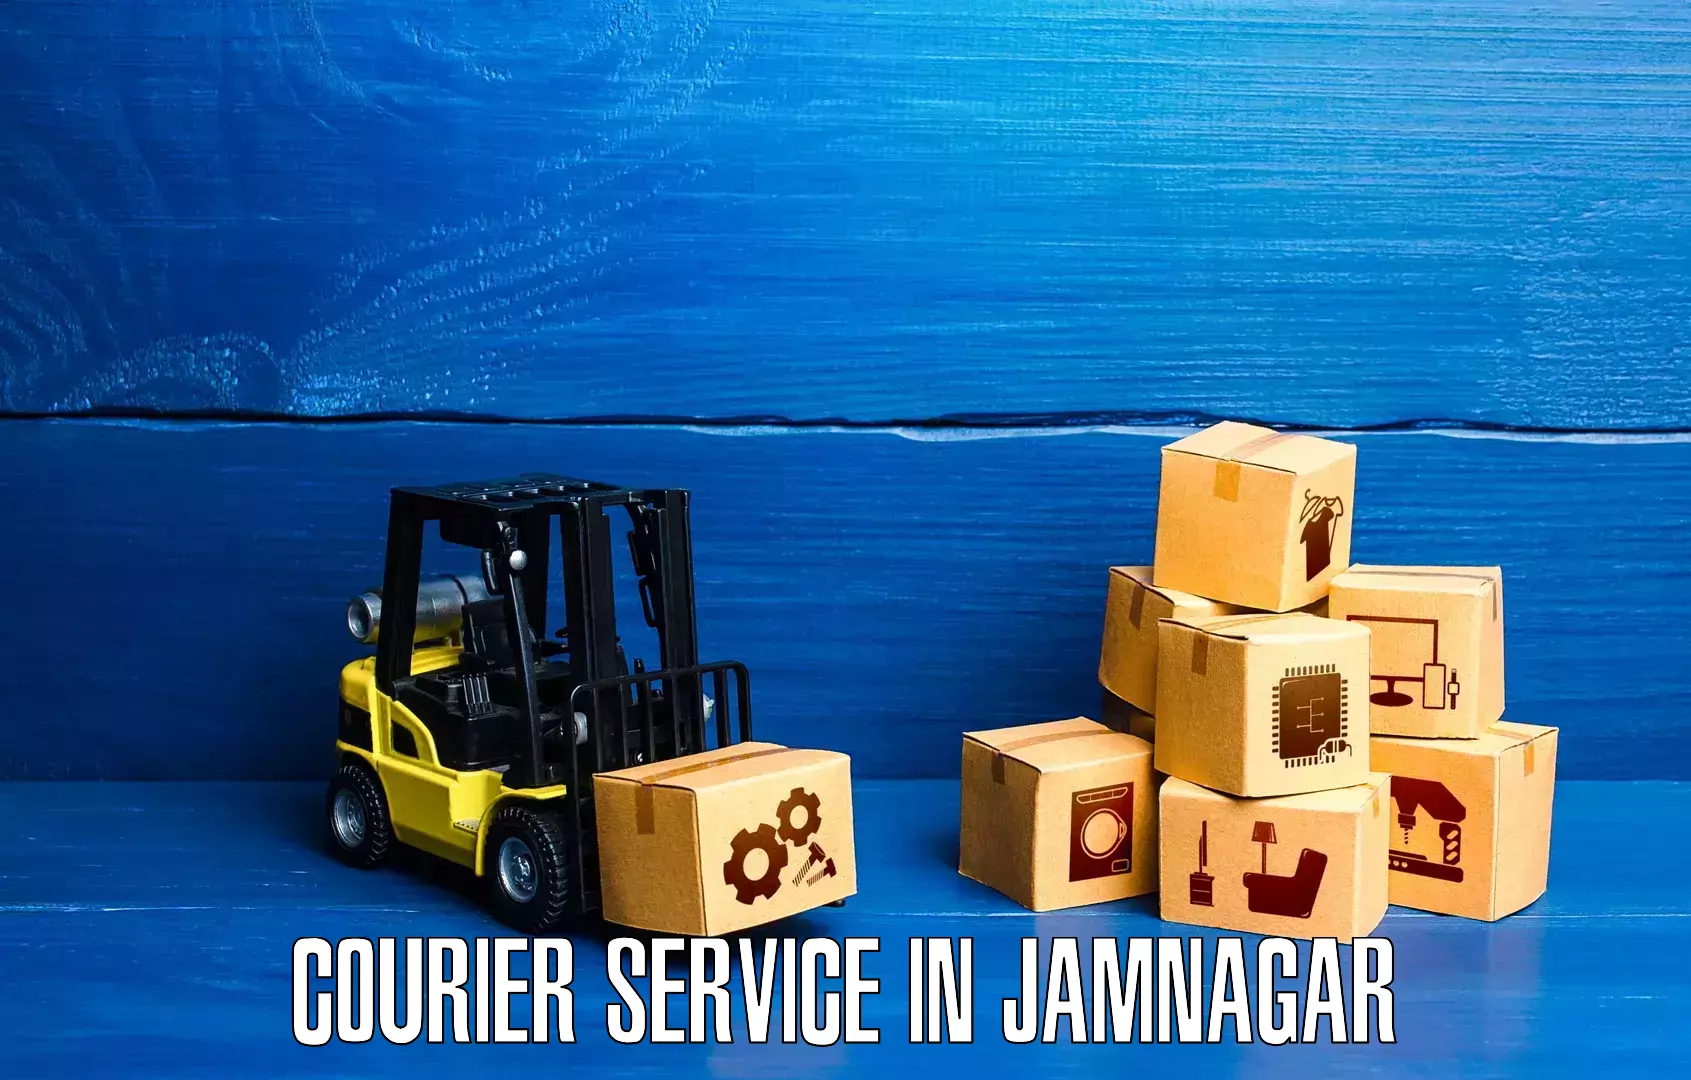 Comprehensive parcel tracking in Jamnagar